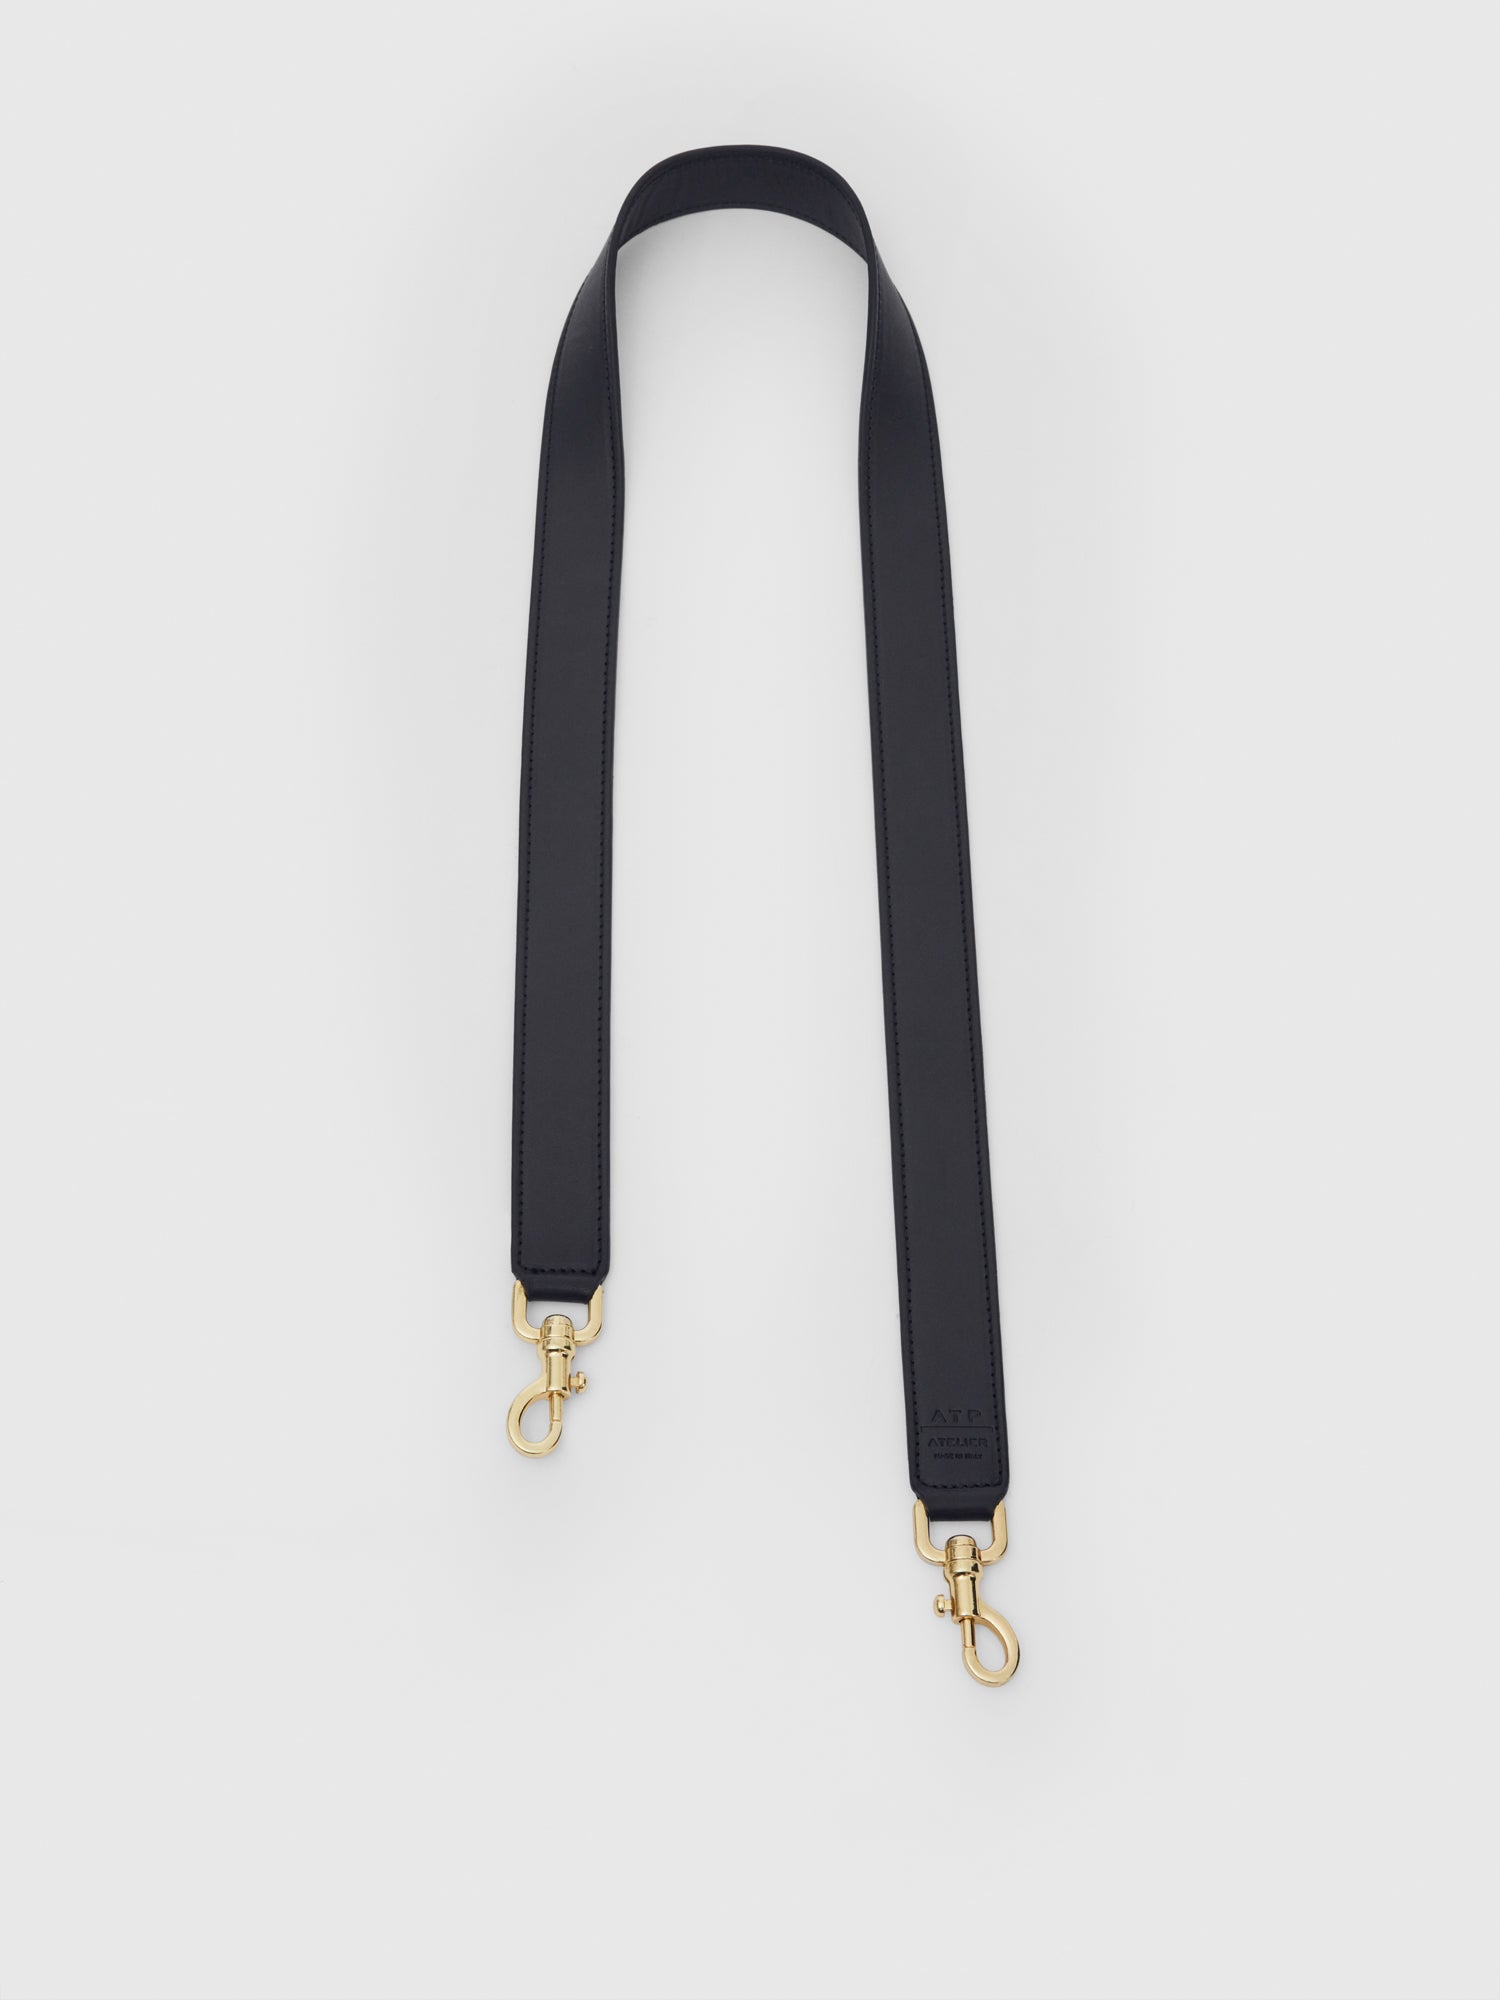 Galdo Black Leather Long shoulder strap